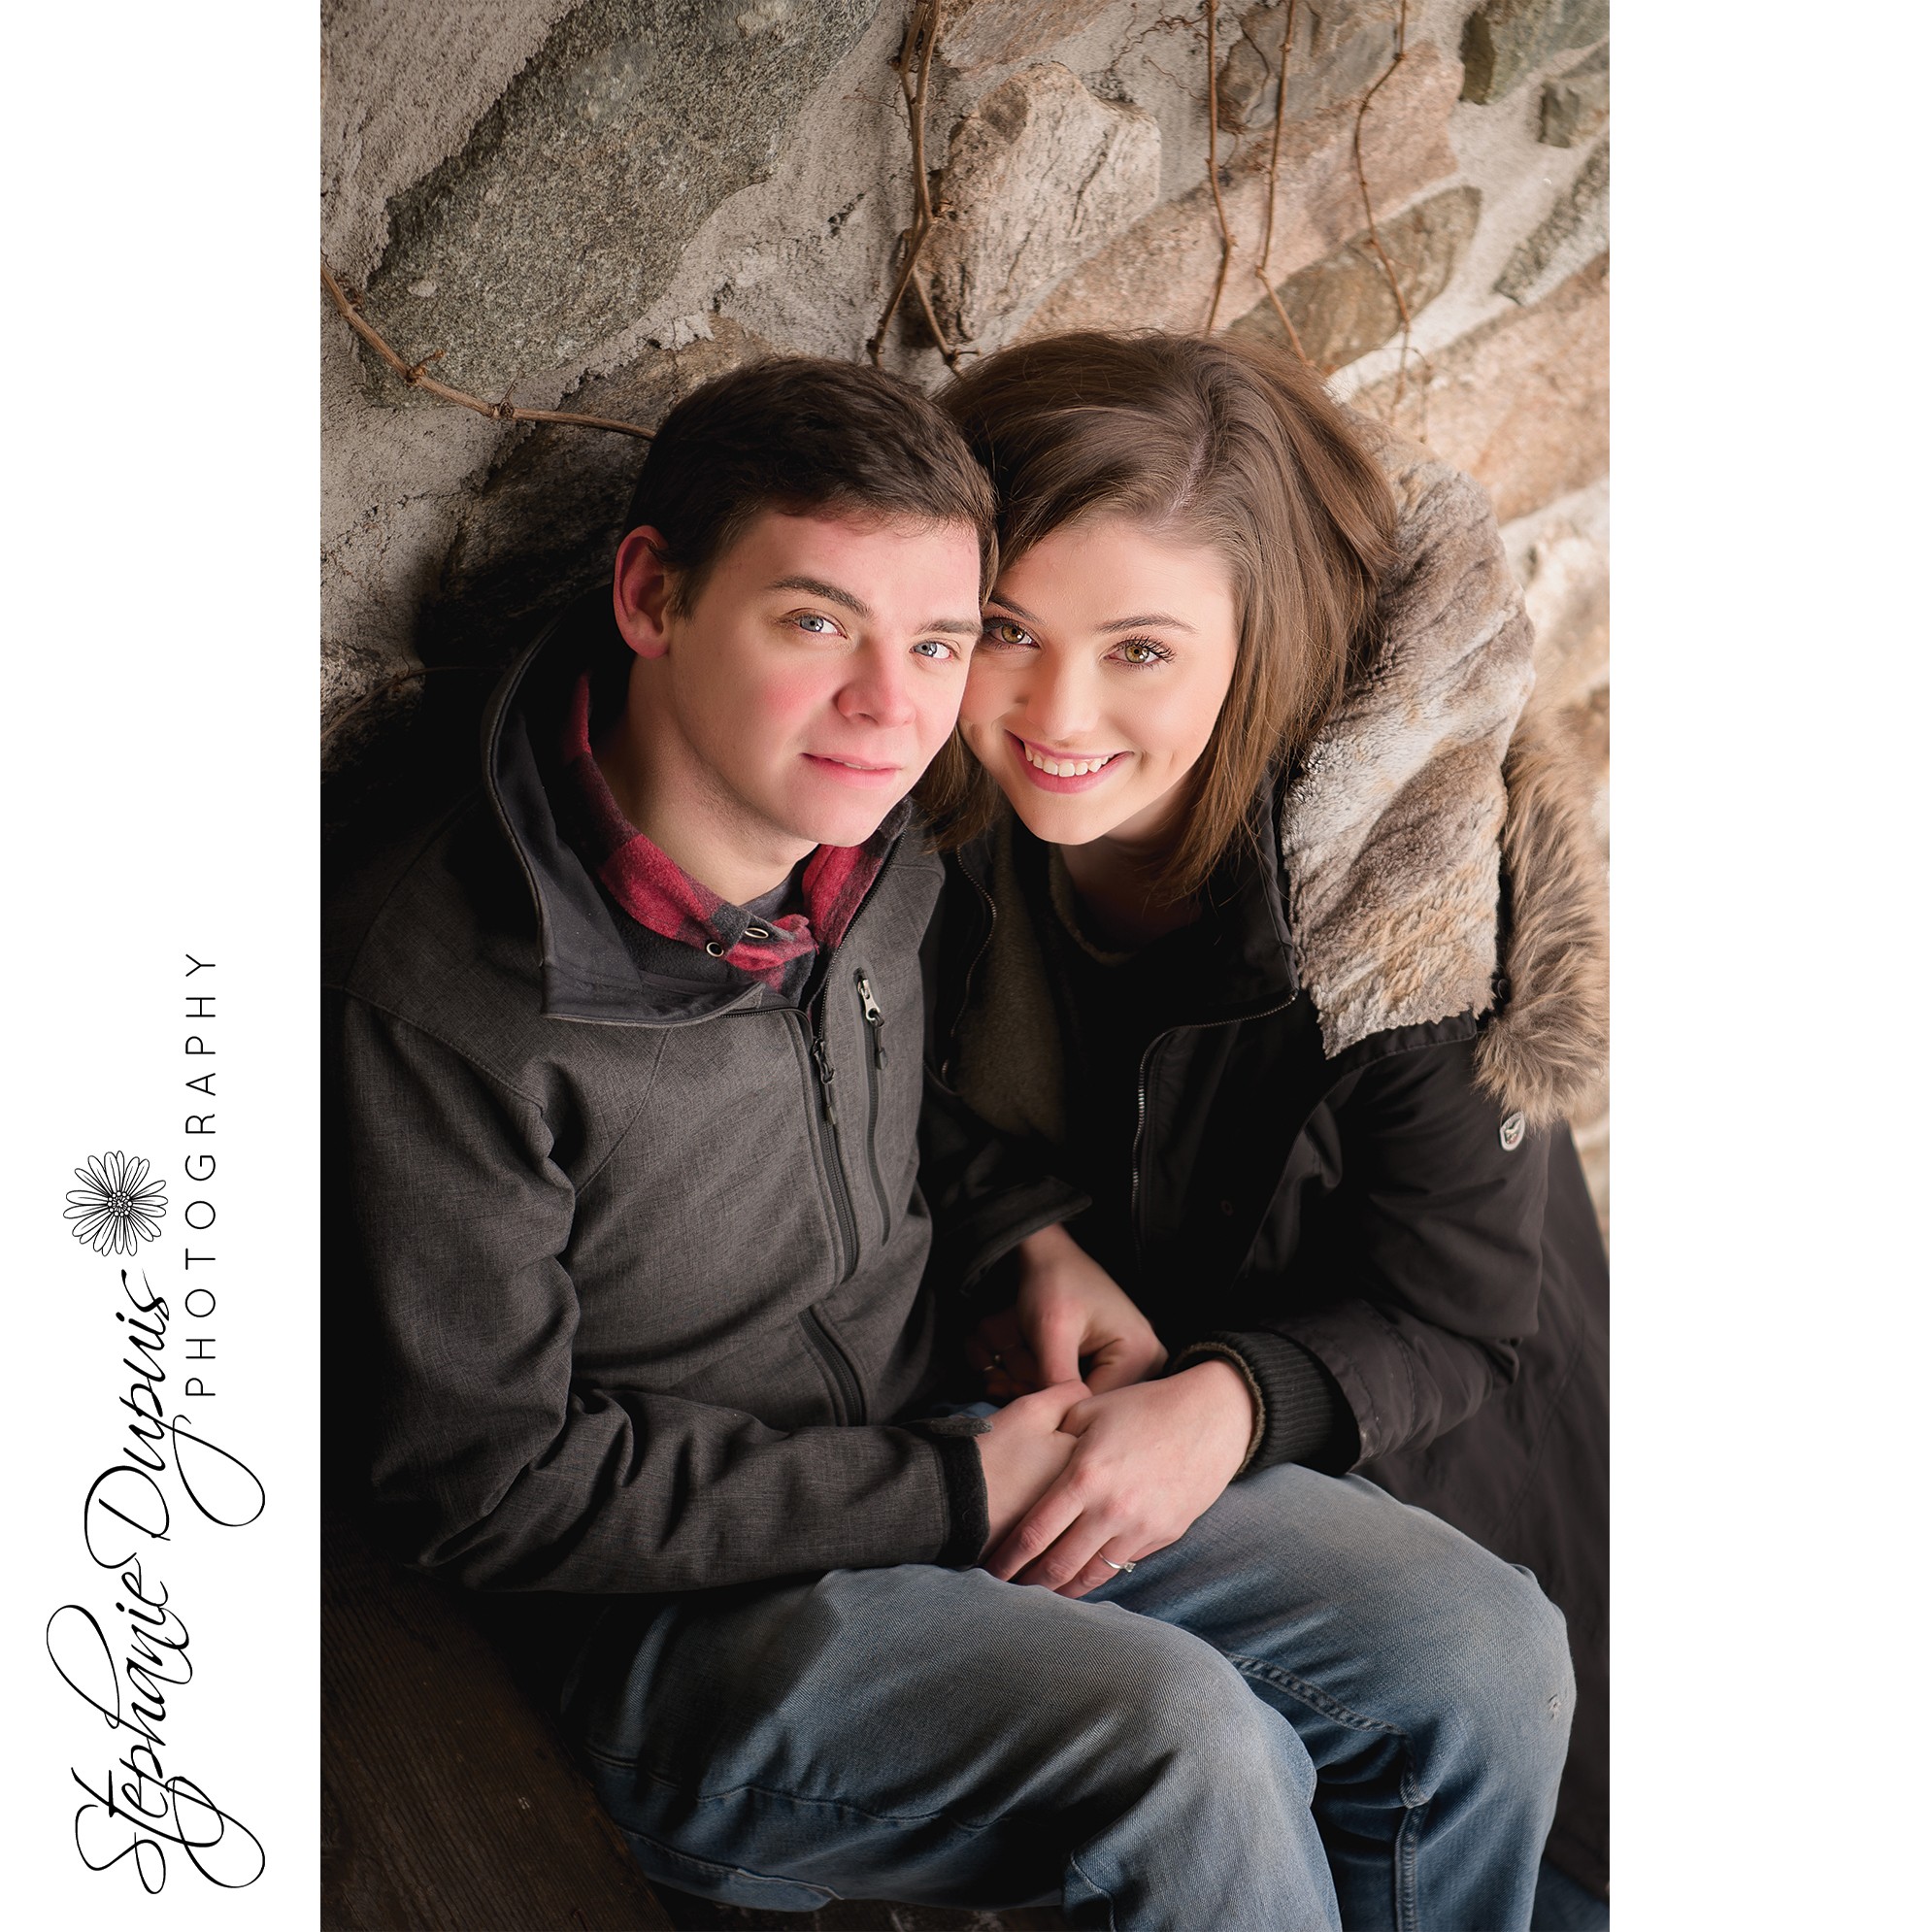 Engagement Photographer 10 - Portfolio: Ethan & Baylee's Engagement